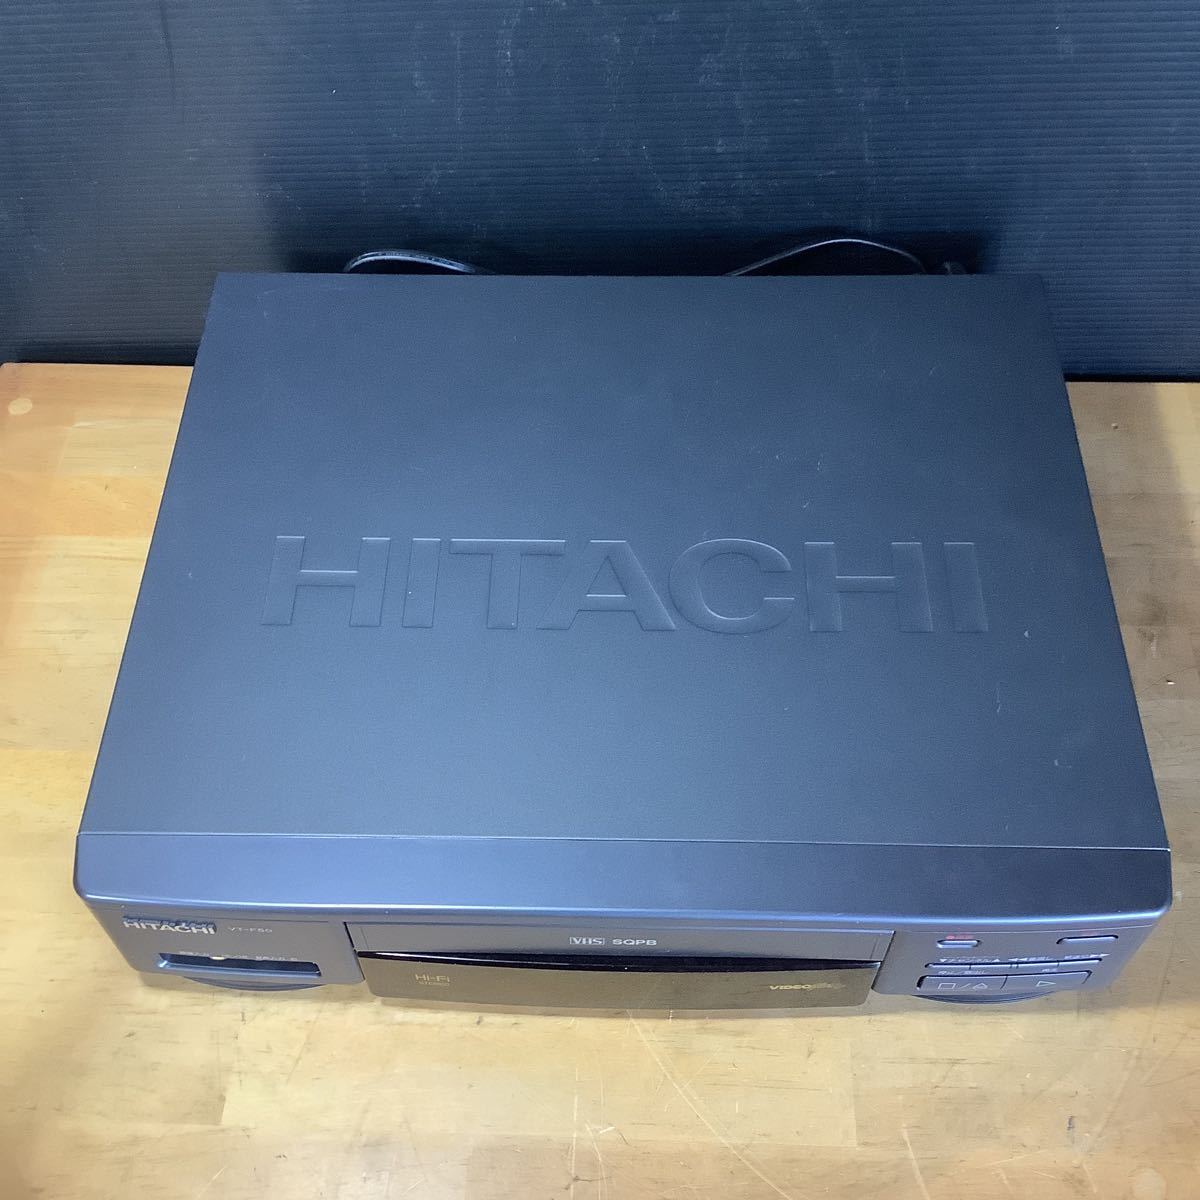 HITACHI видео кассета магнитофон Hitachi VT-F50 94 год производства MADE IN JAPAN VHS видеодека б/у 